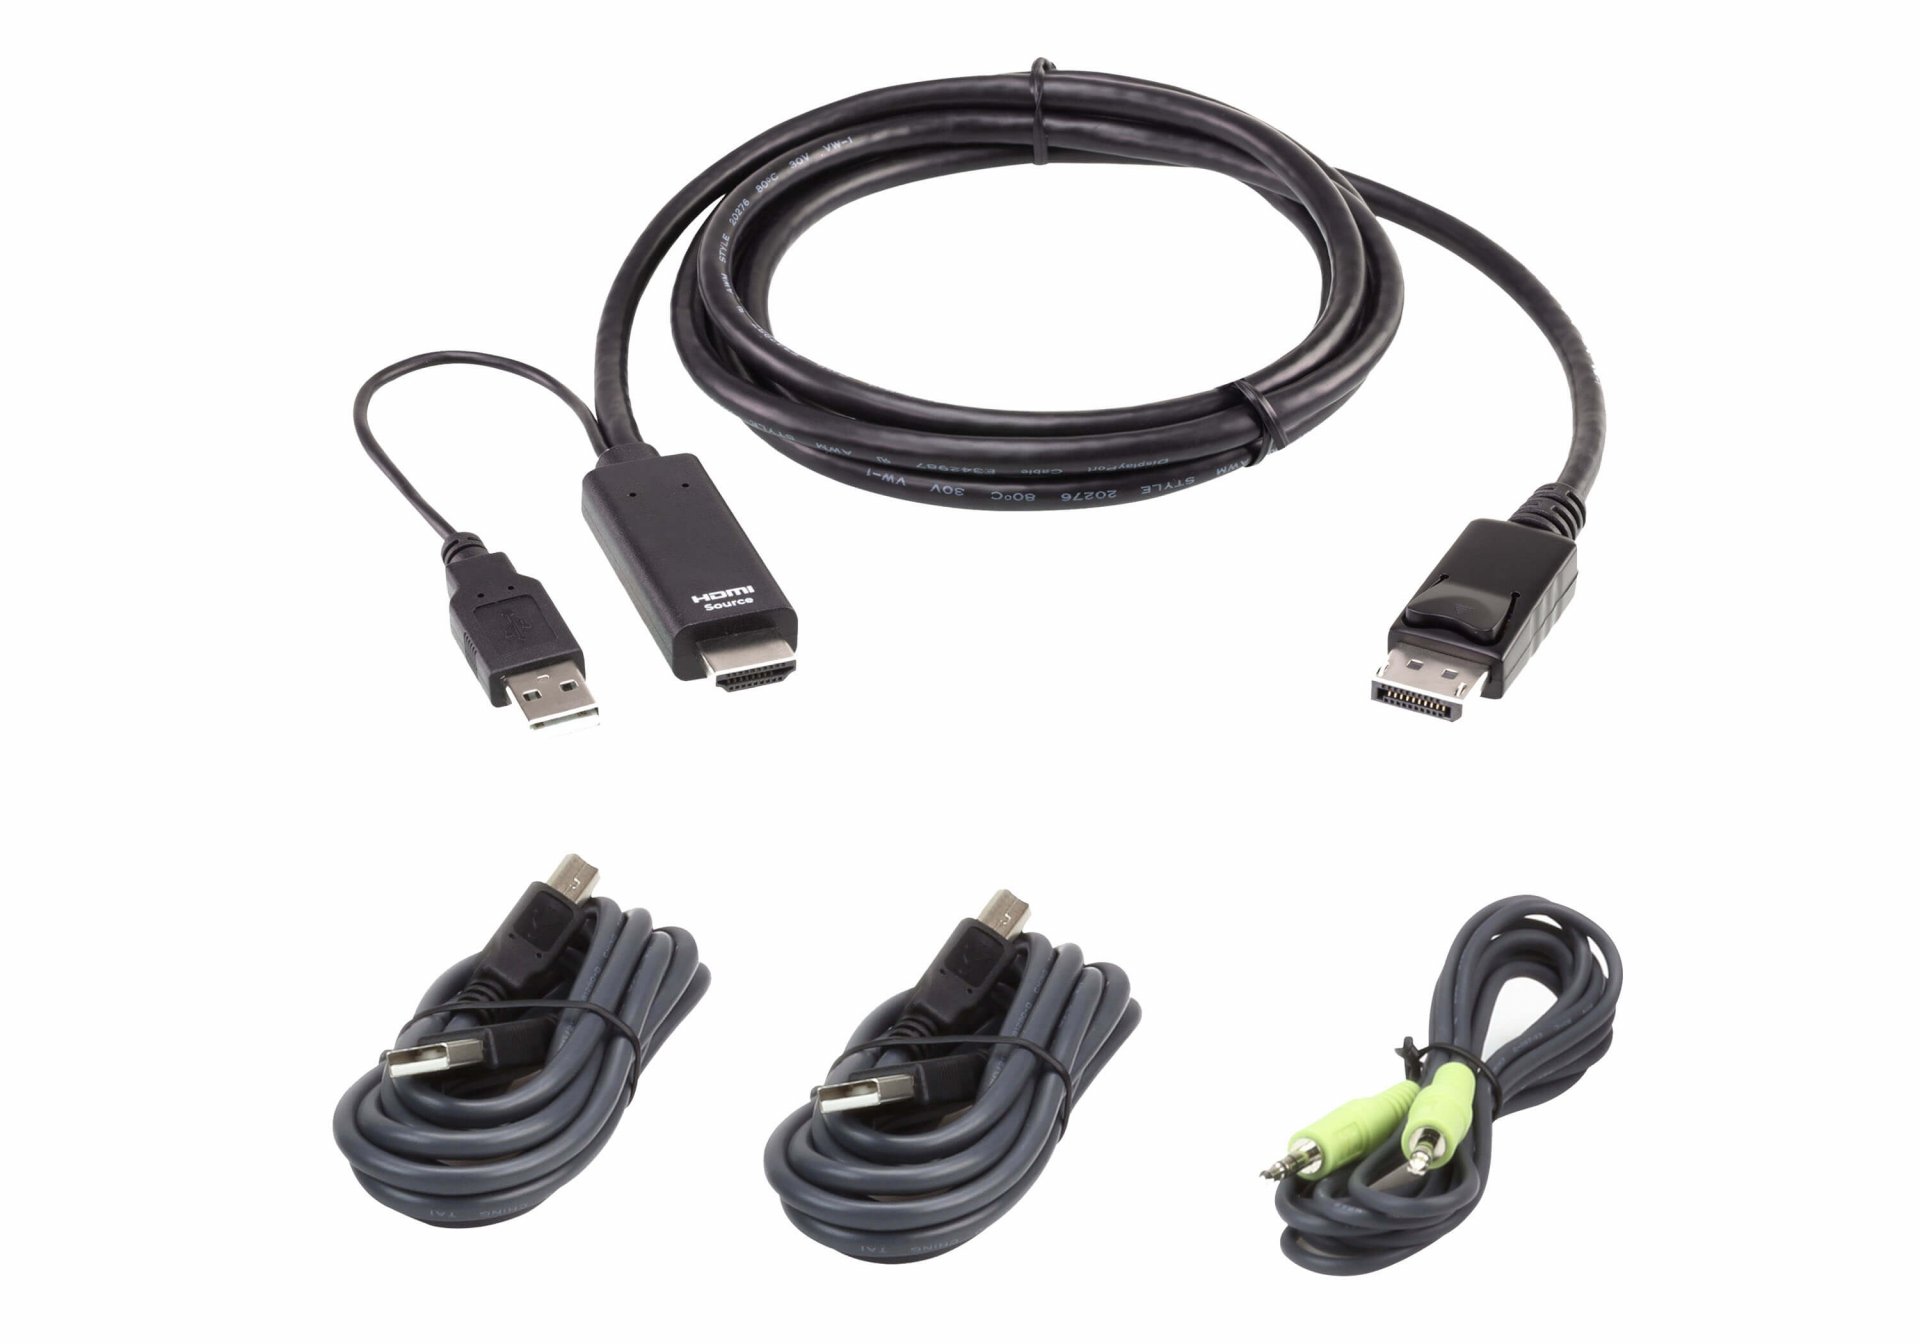 2L-7D02UHDPX4 : 1.8M USB Universal Secure KVM Cable Kit